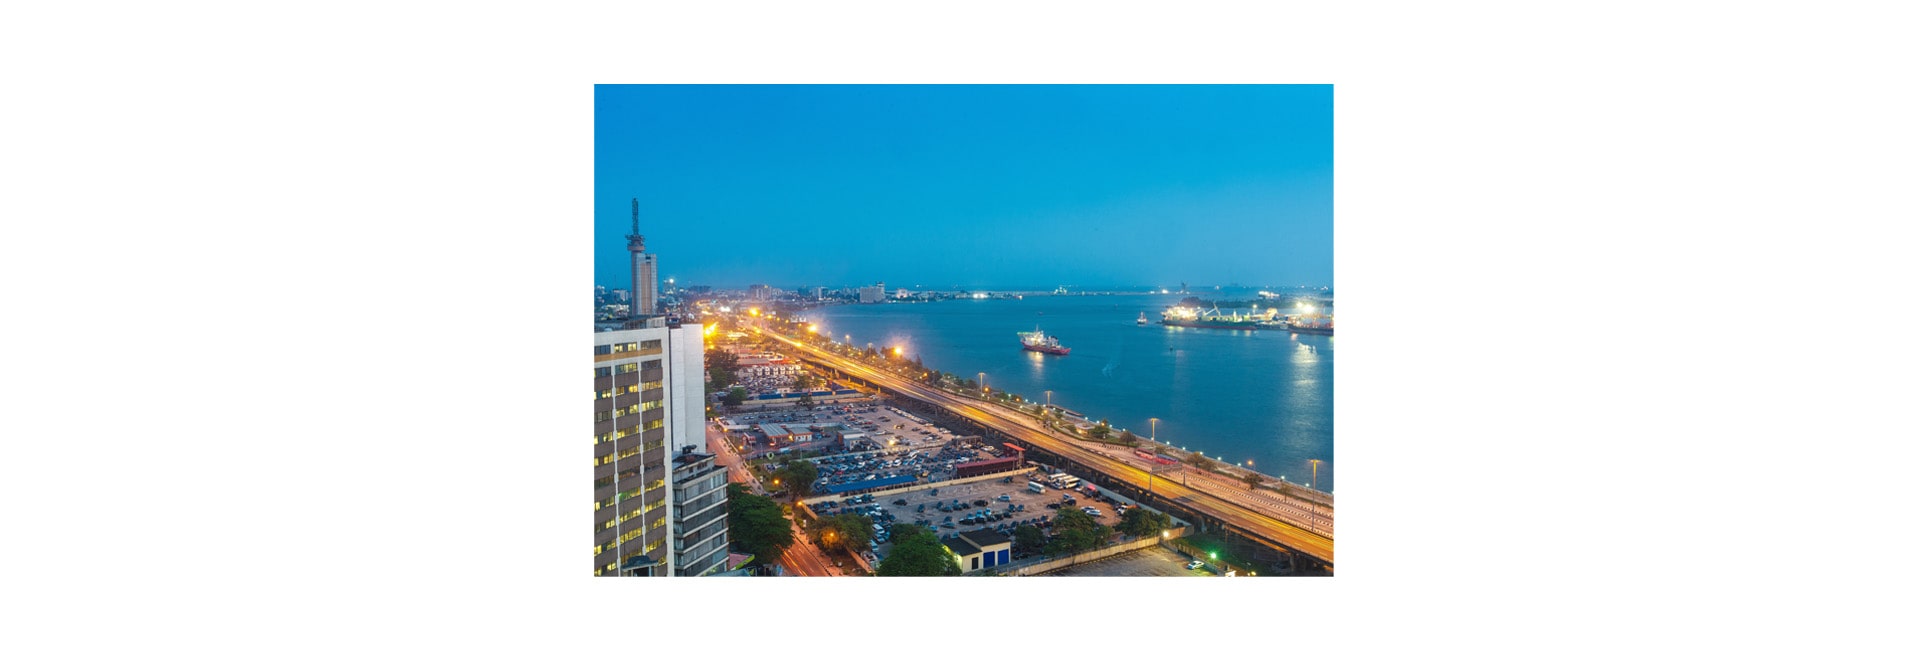 RCG-Reisen GmbH: Erleben Sie mit einem Flug nach Afrika den schönen Hafen von Lagos, der Millionenstadt in Nigeria